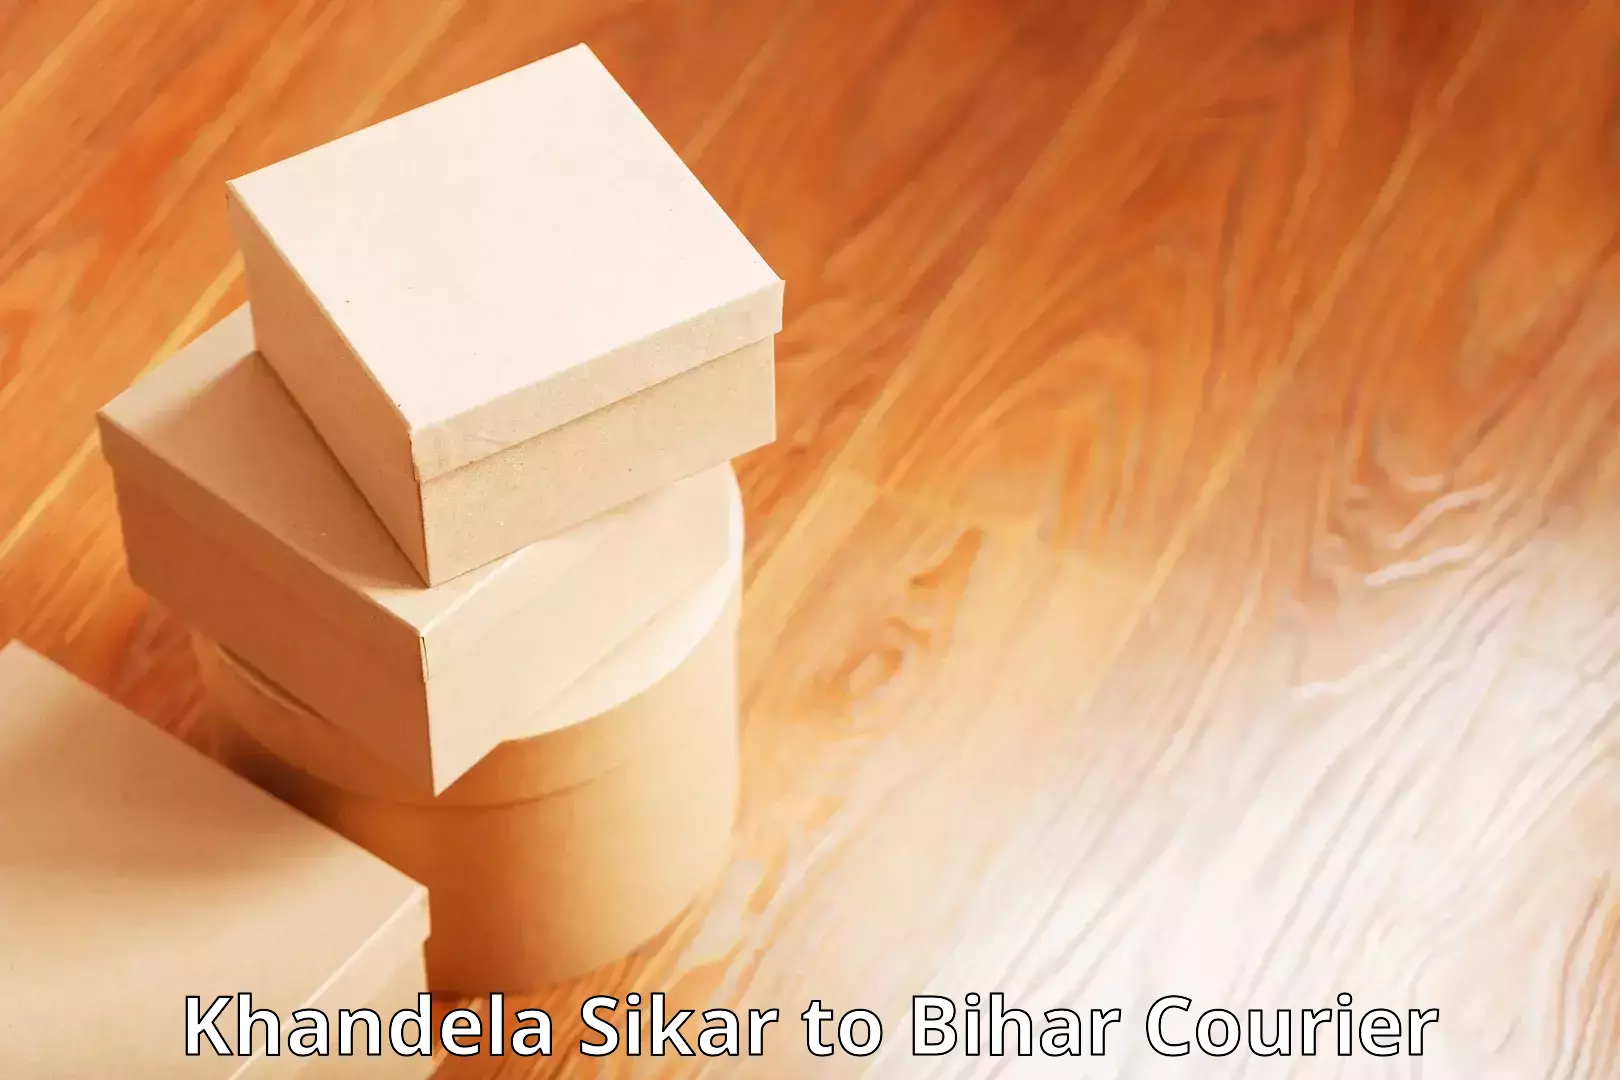 Expedited parcel delivery Khandela Sikar to Gopalganj